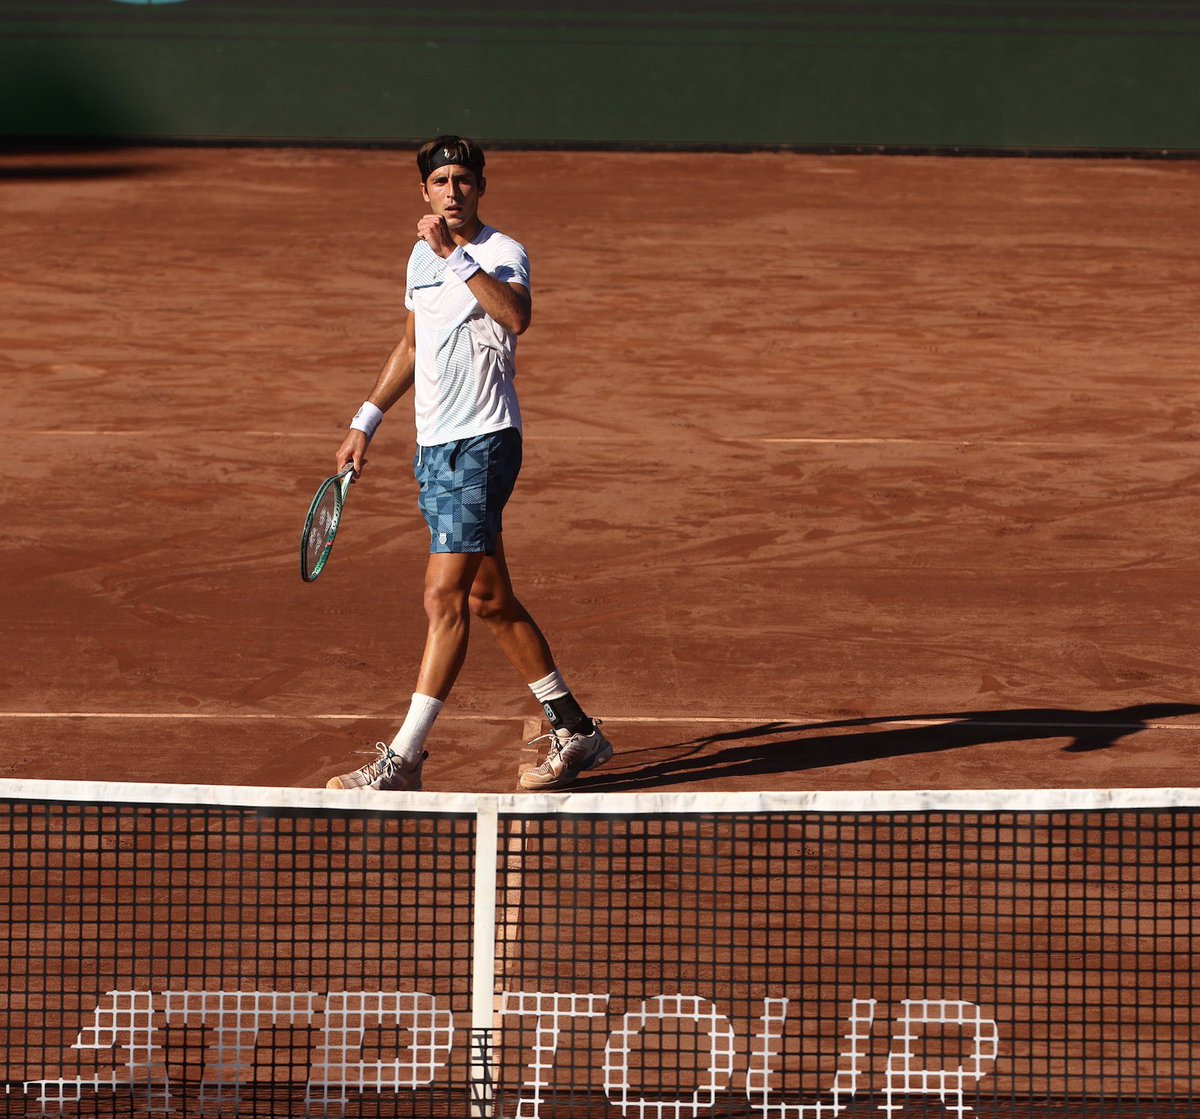 TRIUNFAZO RETU 🔥🎾 Tomás Etcheverry 🇦🇷 venció por doble 6-4 a Daniel Galán 🇨🇴 y accedió a los cuartos de final del #ATP250 de Houston 🇺🇸. Su próximo rival será el local Michael Mmoh (123 ATP) 🇺🇸.